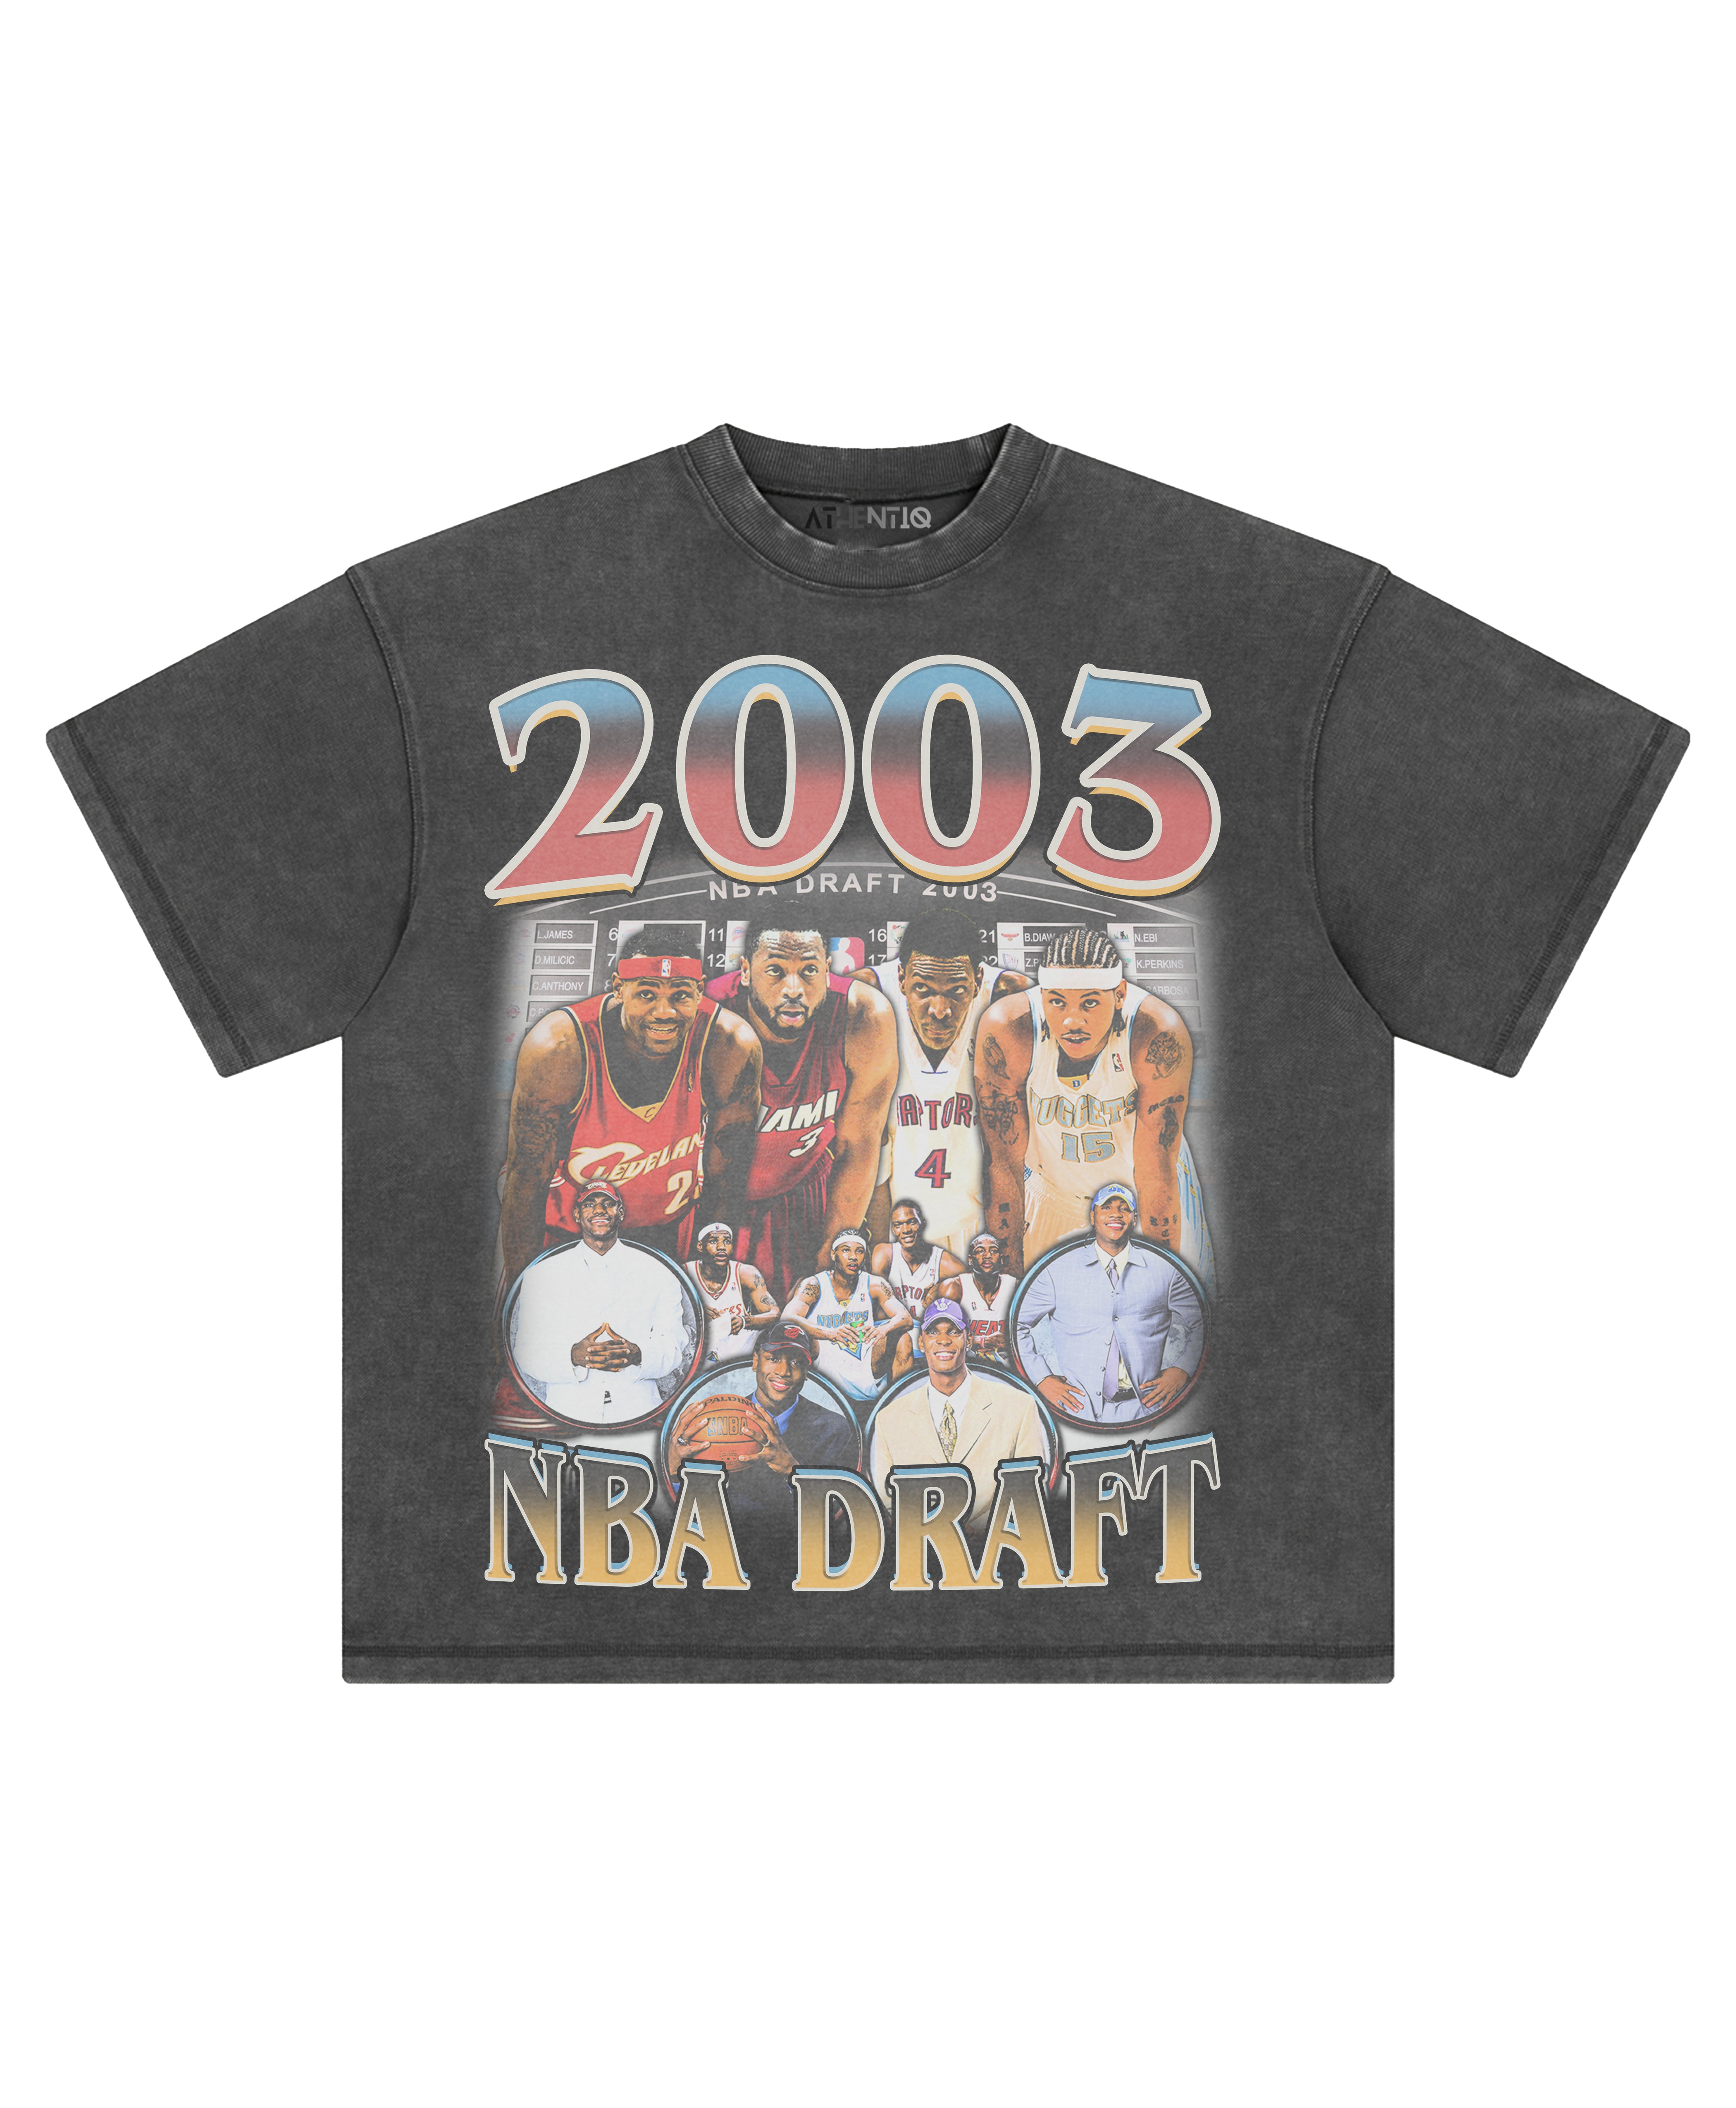 2003 NBA DRAFT TEE